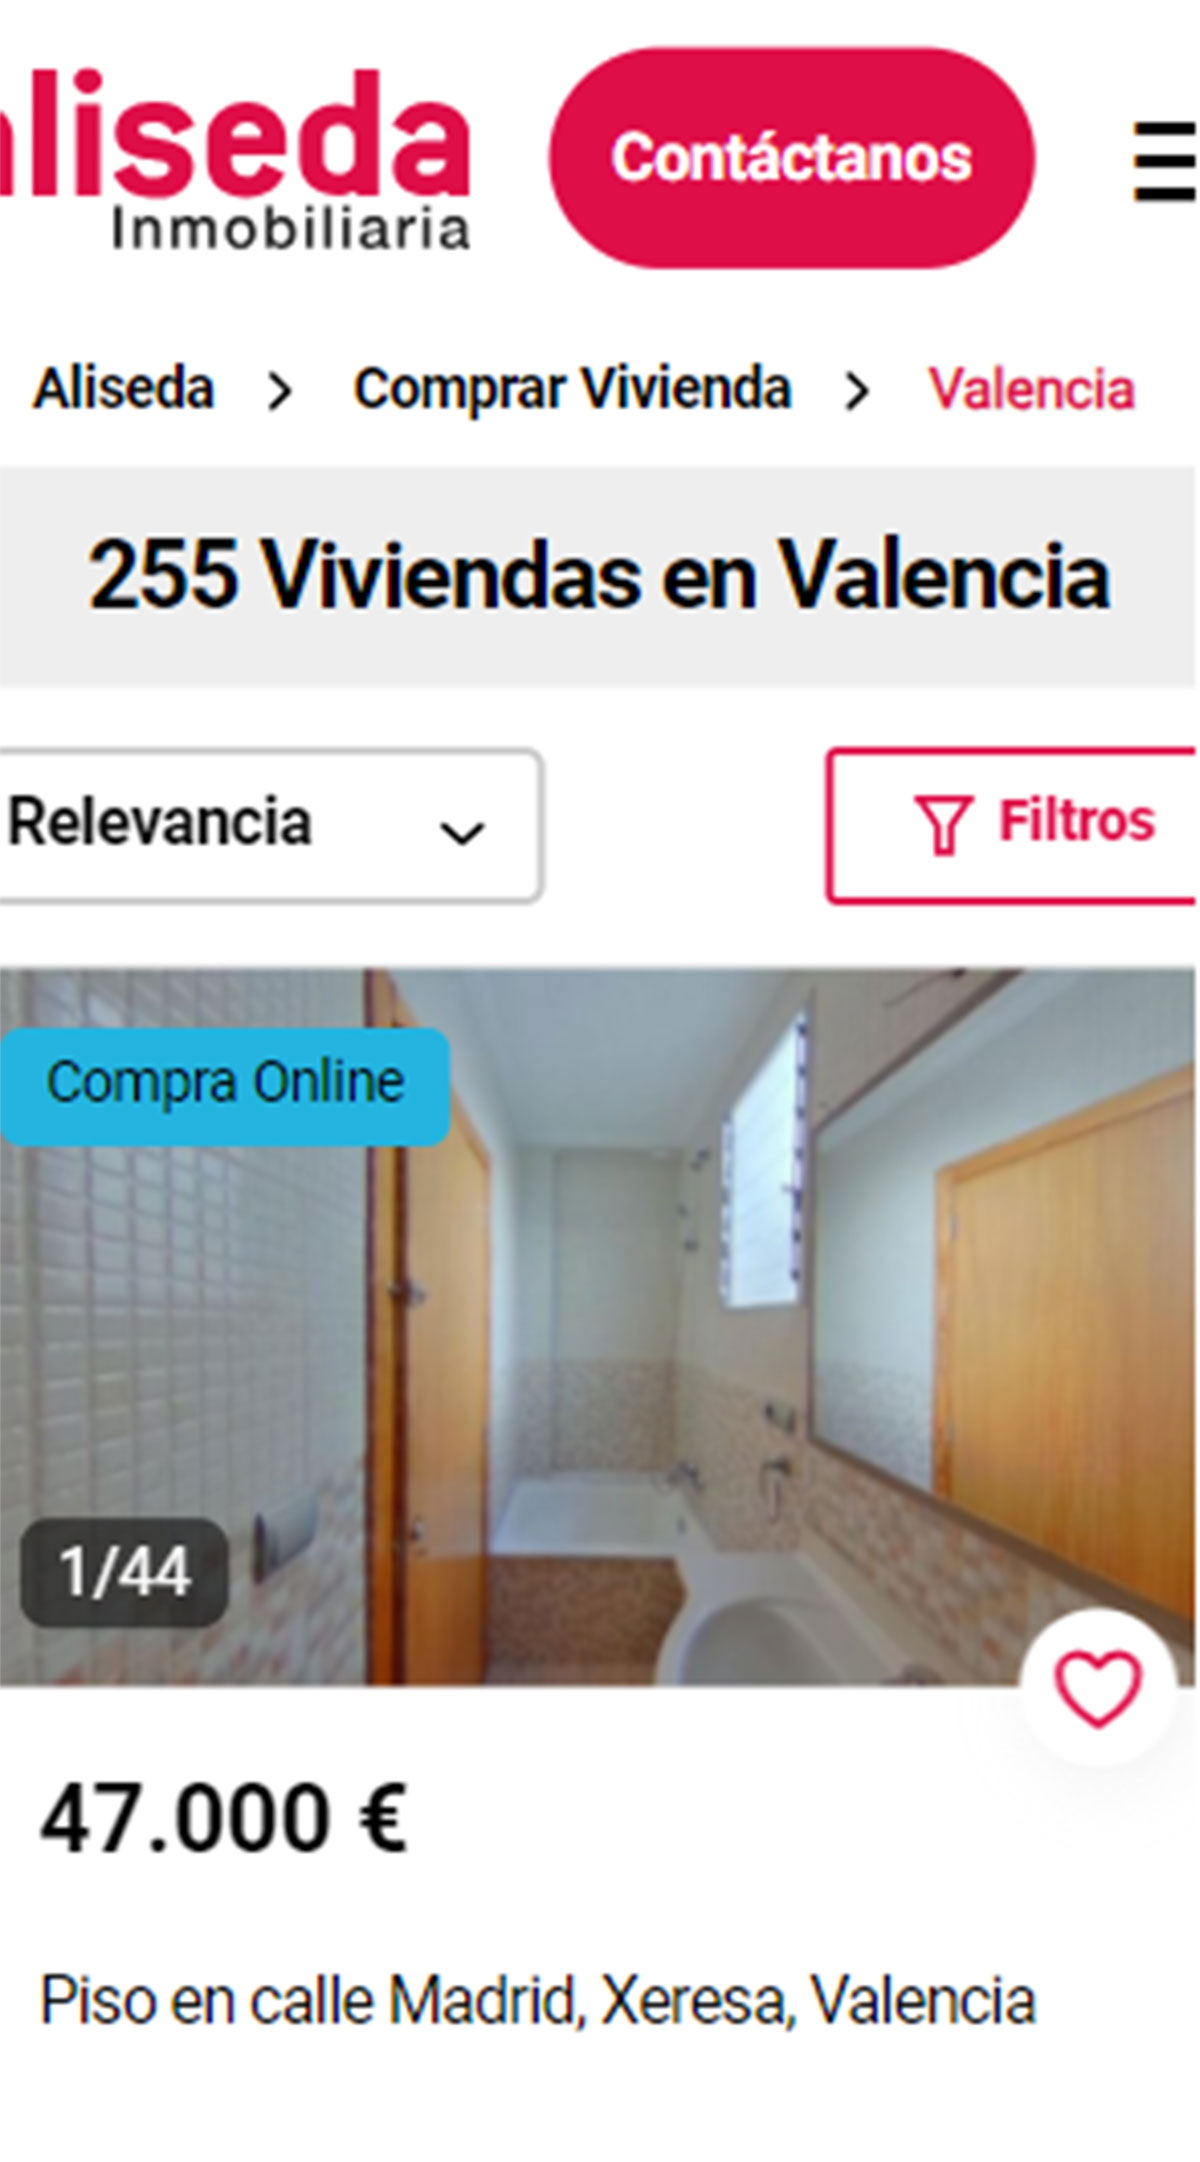 Catálogo de viviendas en Valencia de Aliseda